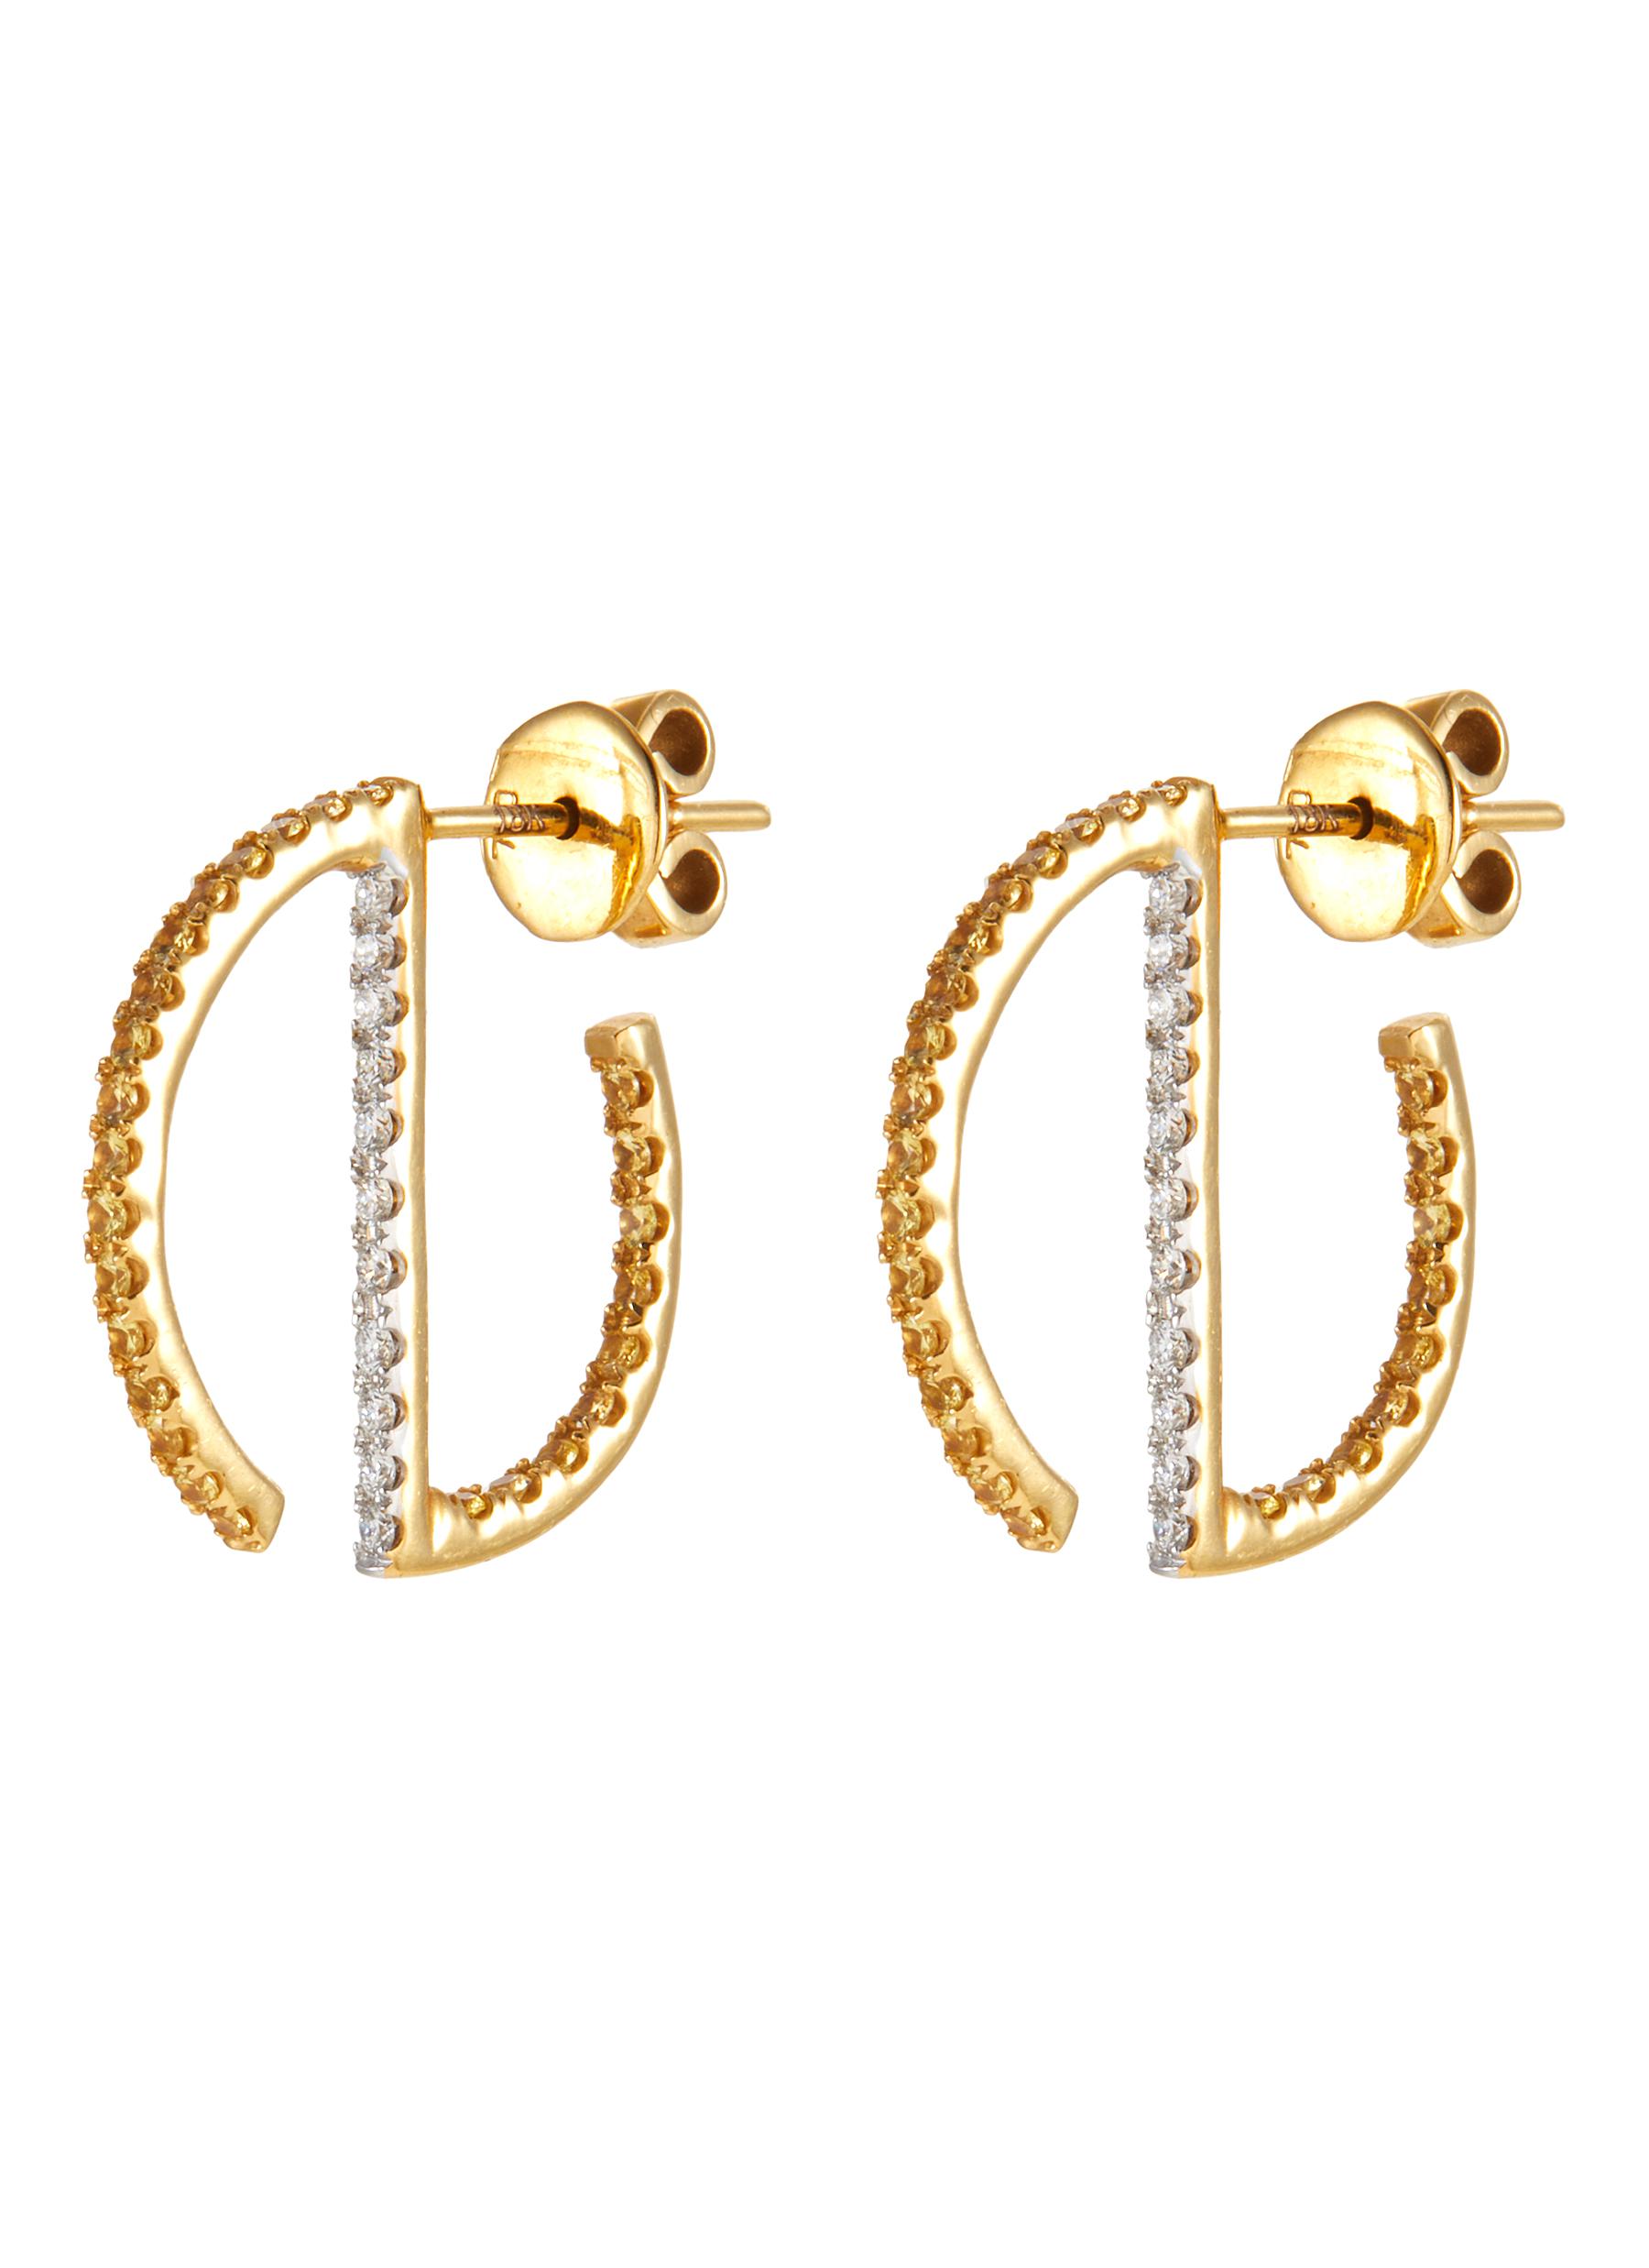 KAVANT & SHARART ‘GeoArt' Diamond 18K Gold S-Shaped Earrings